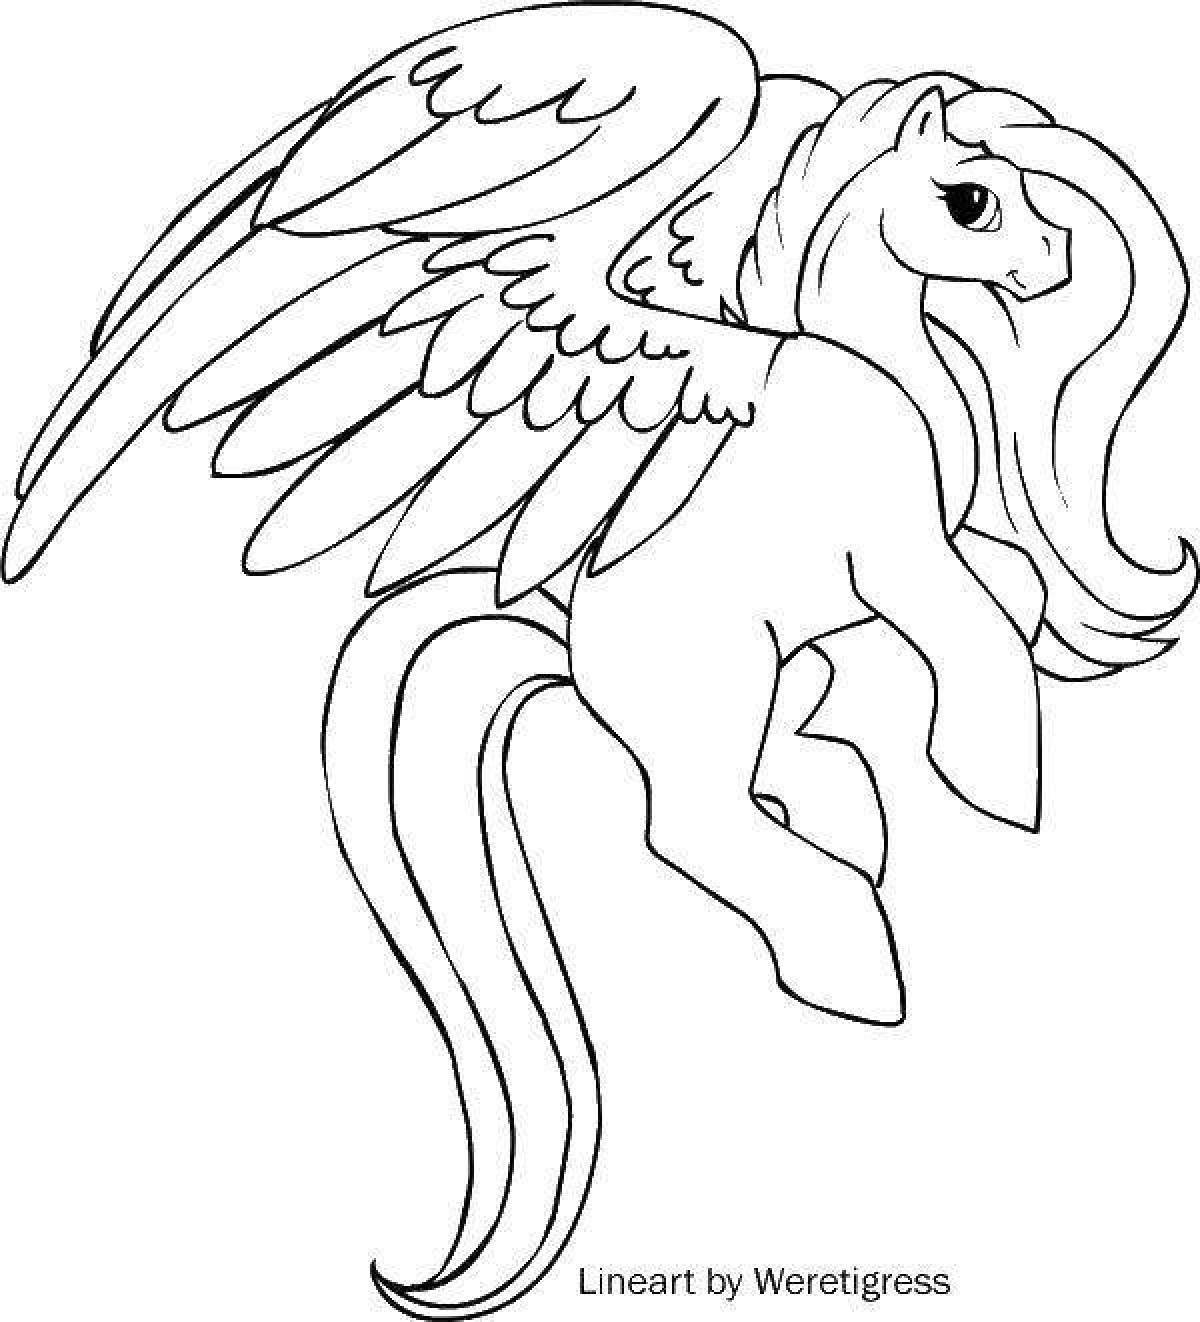 Геральдический щит морского льва и единорога и рыцаря - векторный рисунок